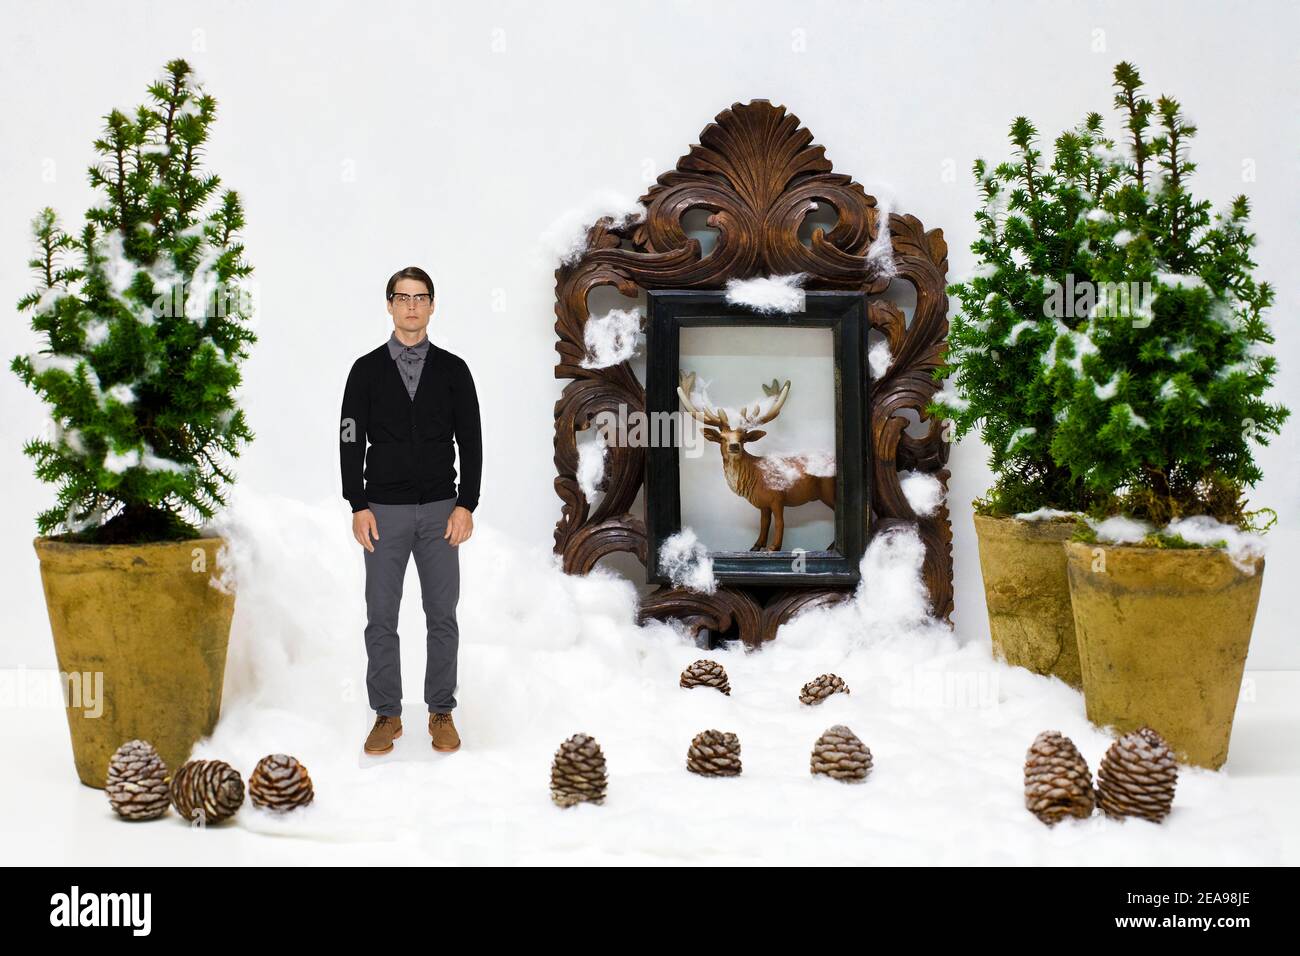 Uomo, personaggio giocattolo, cervo, cornice, coni di pino, lana di cotone, neve, vasi di fiori, Natale, albero, bianco, in piedi, figura tagliata Foto Stock